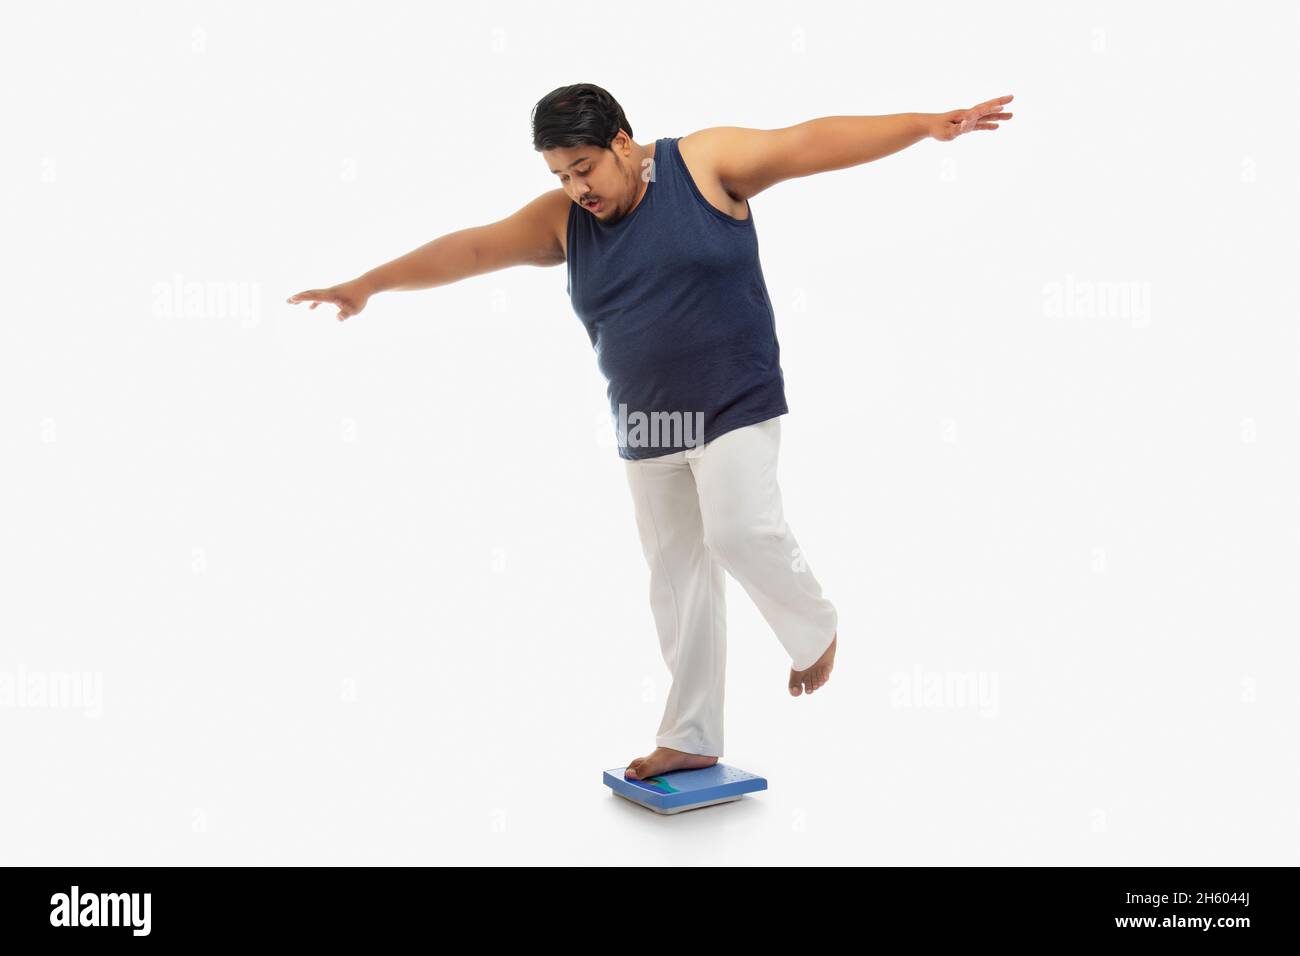 Ritratto di un uomo grasso in piedi una gamba con le braccia allungate sulla macchina di pesatura. Foto Stock